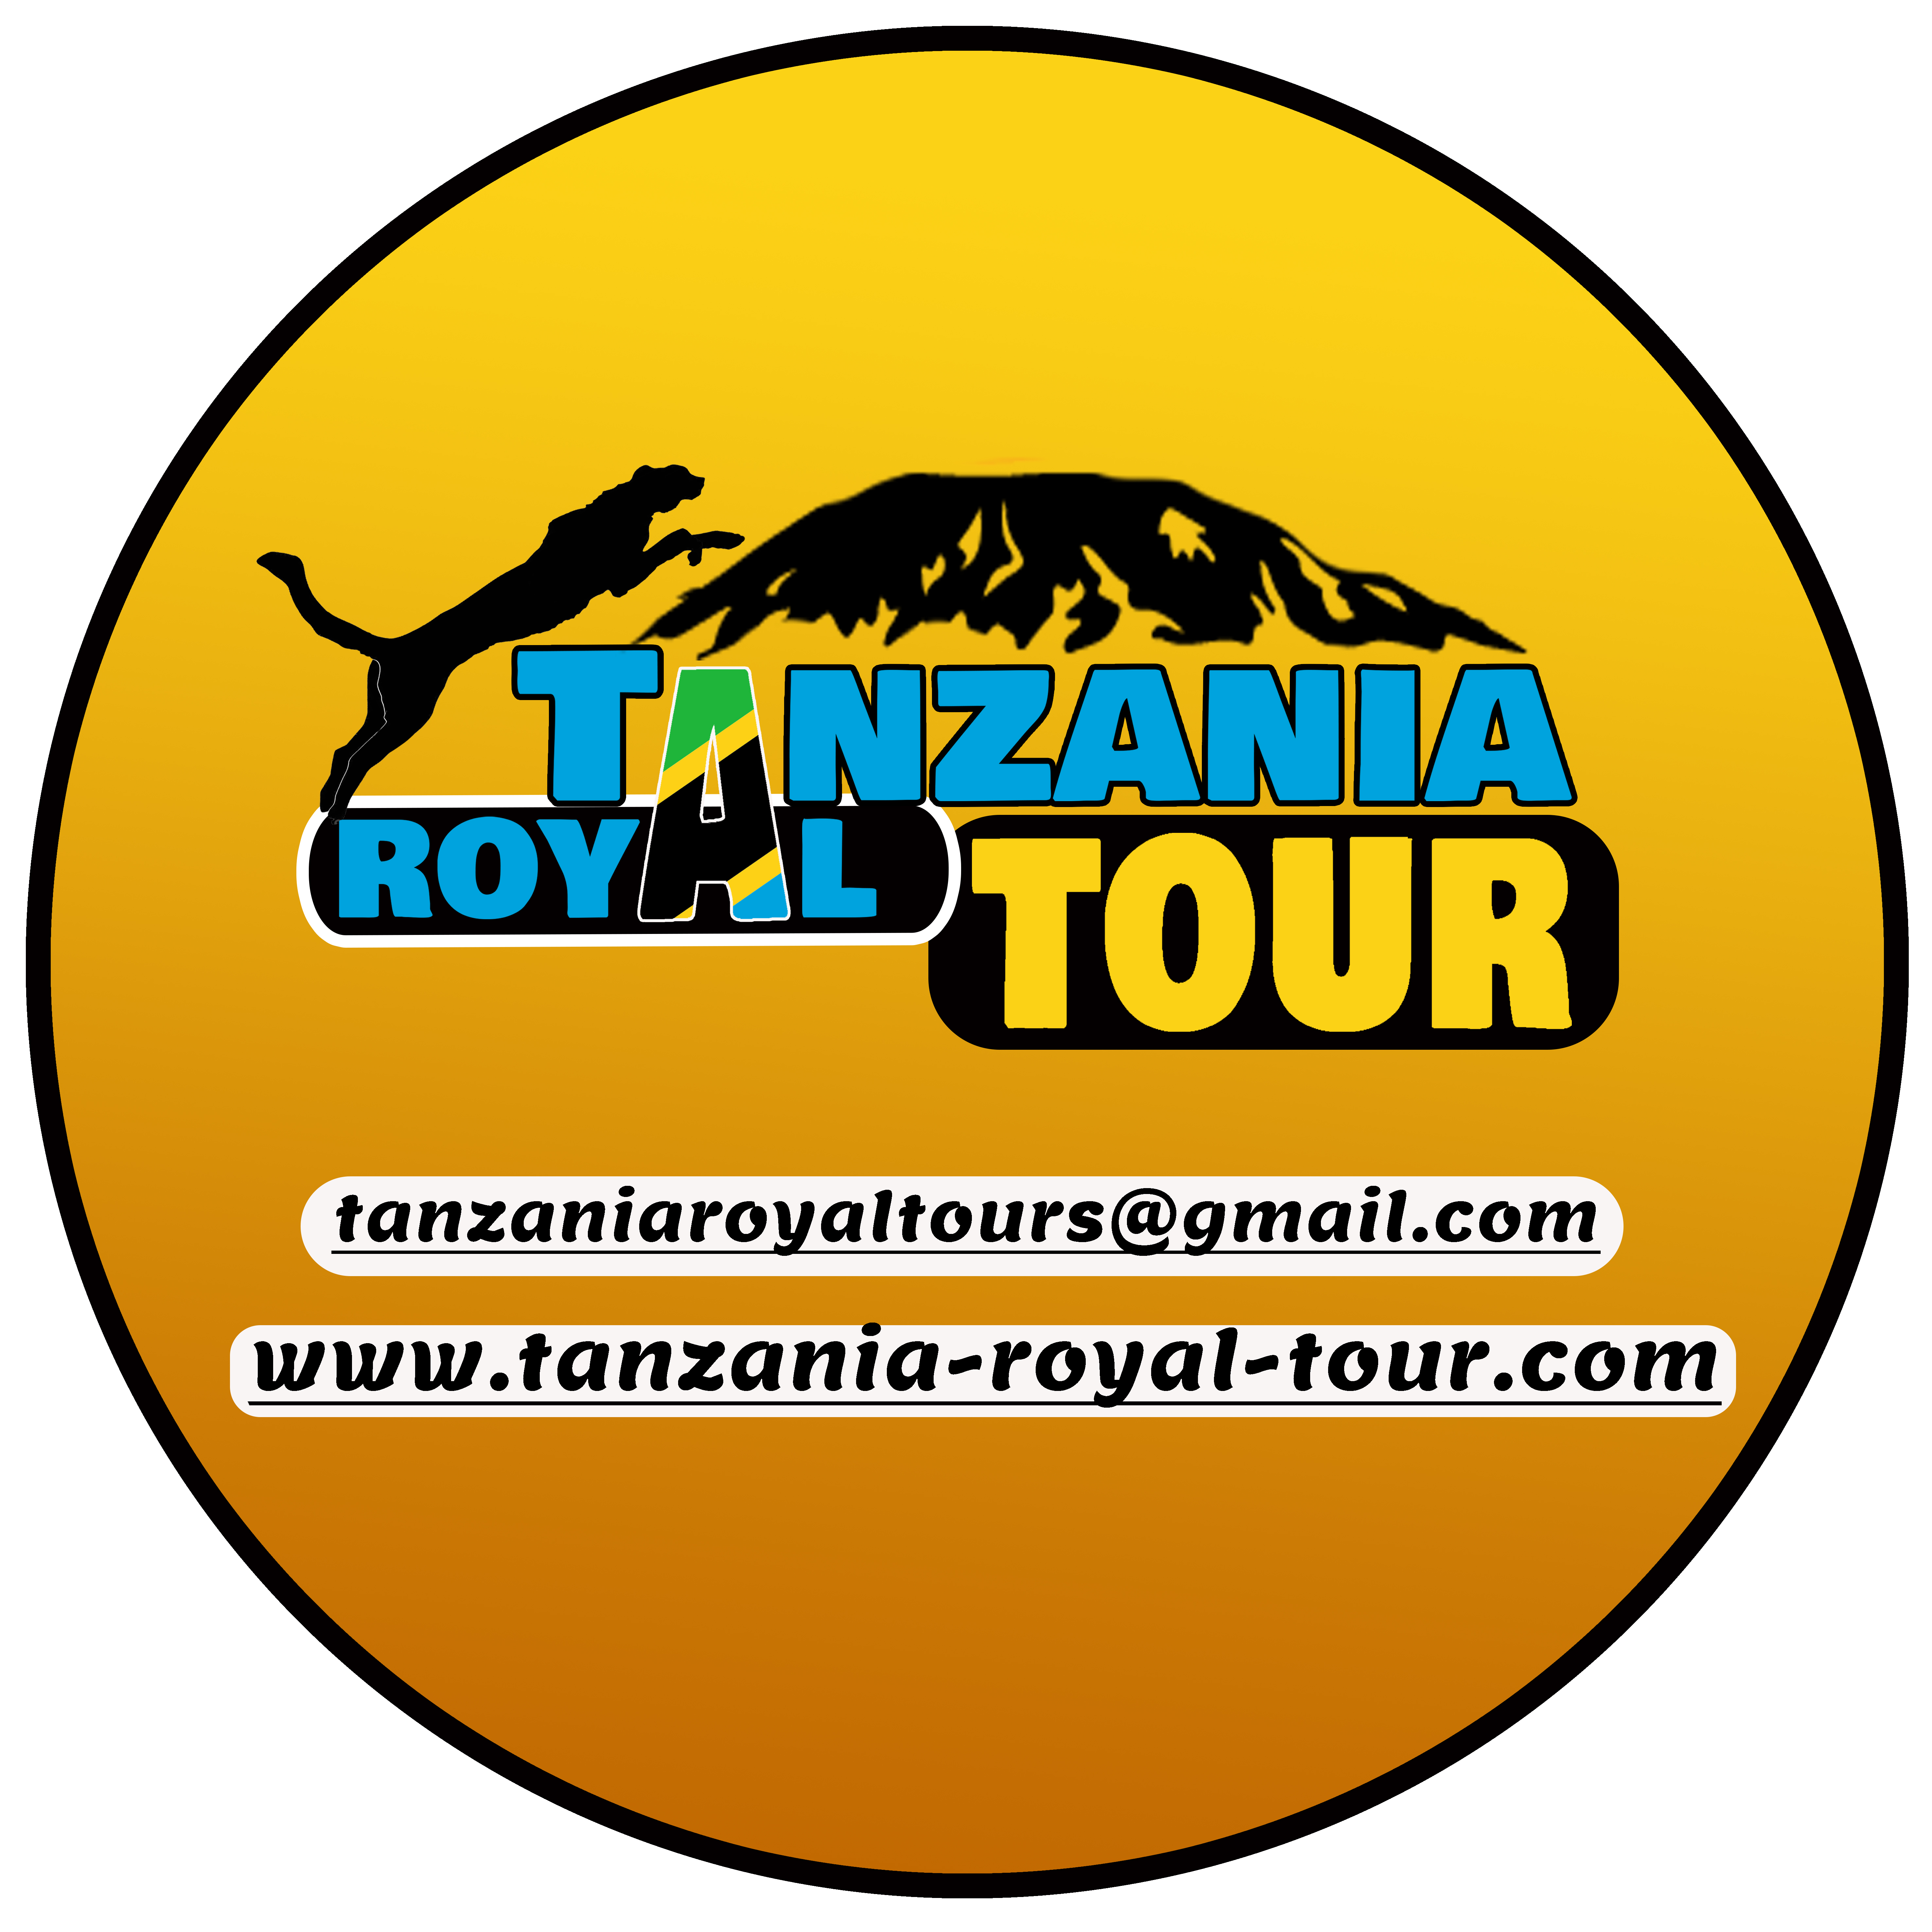 Tanzania Royal Tours and Safaris